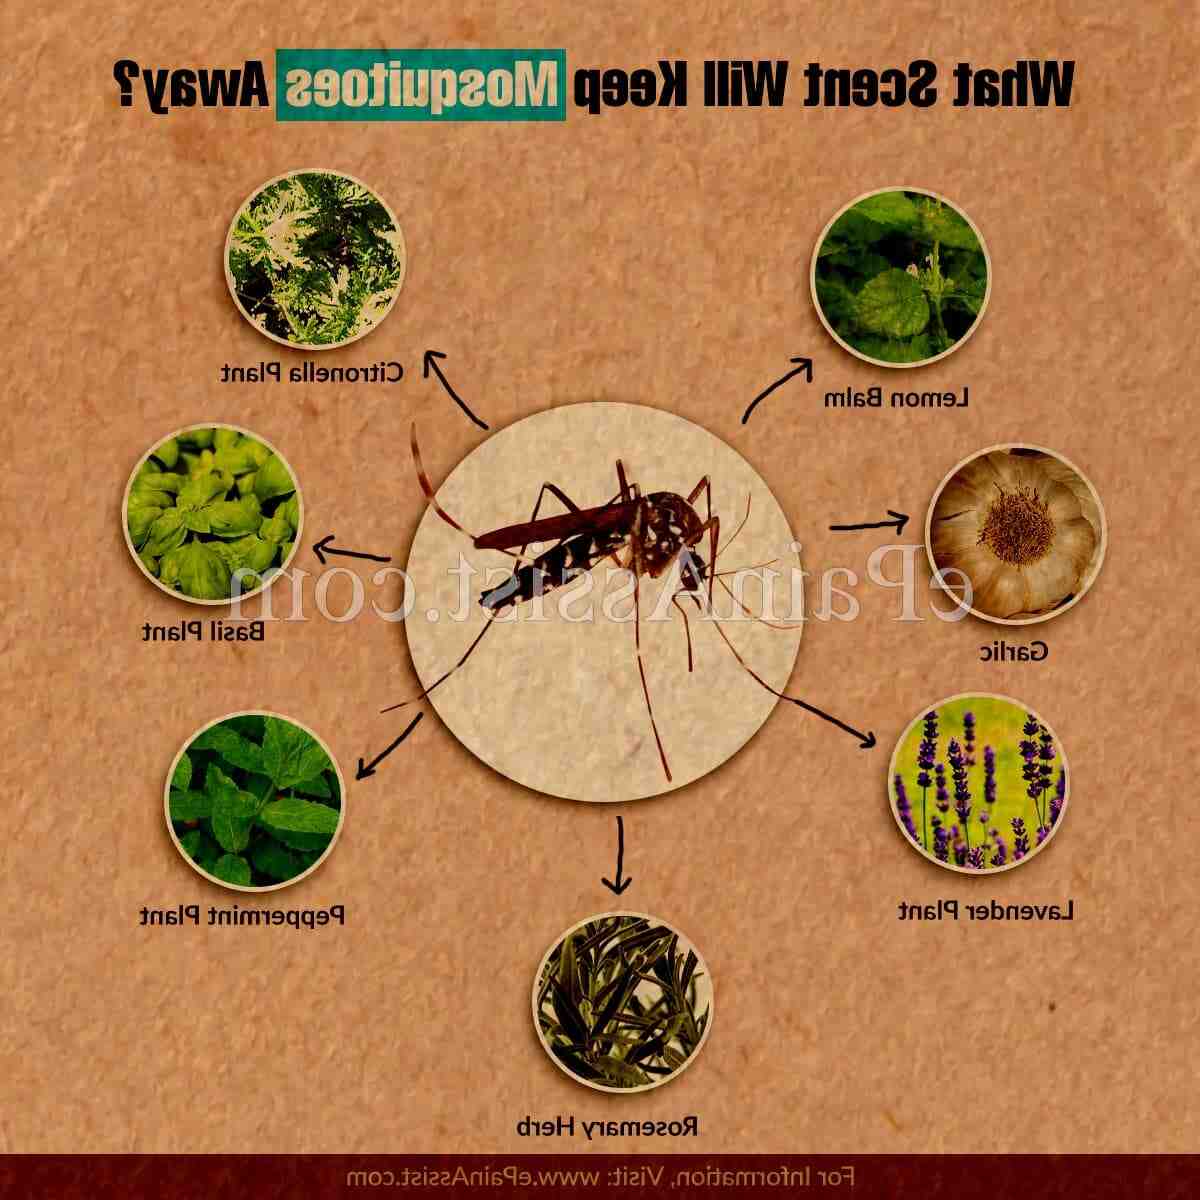 Vilken är den mest effektiva produkten mot myggor?